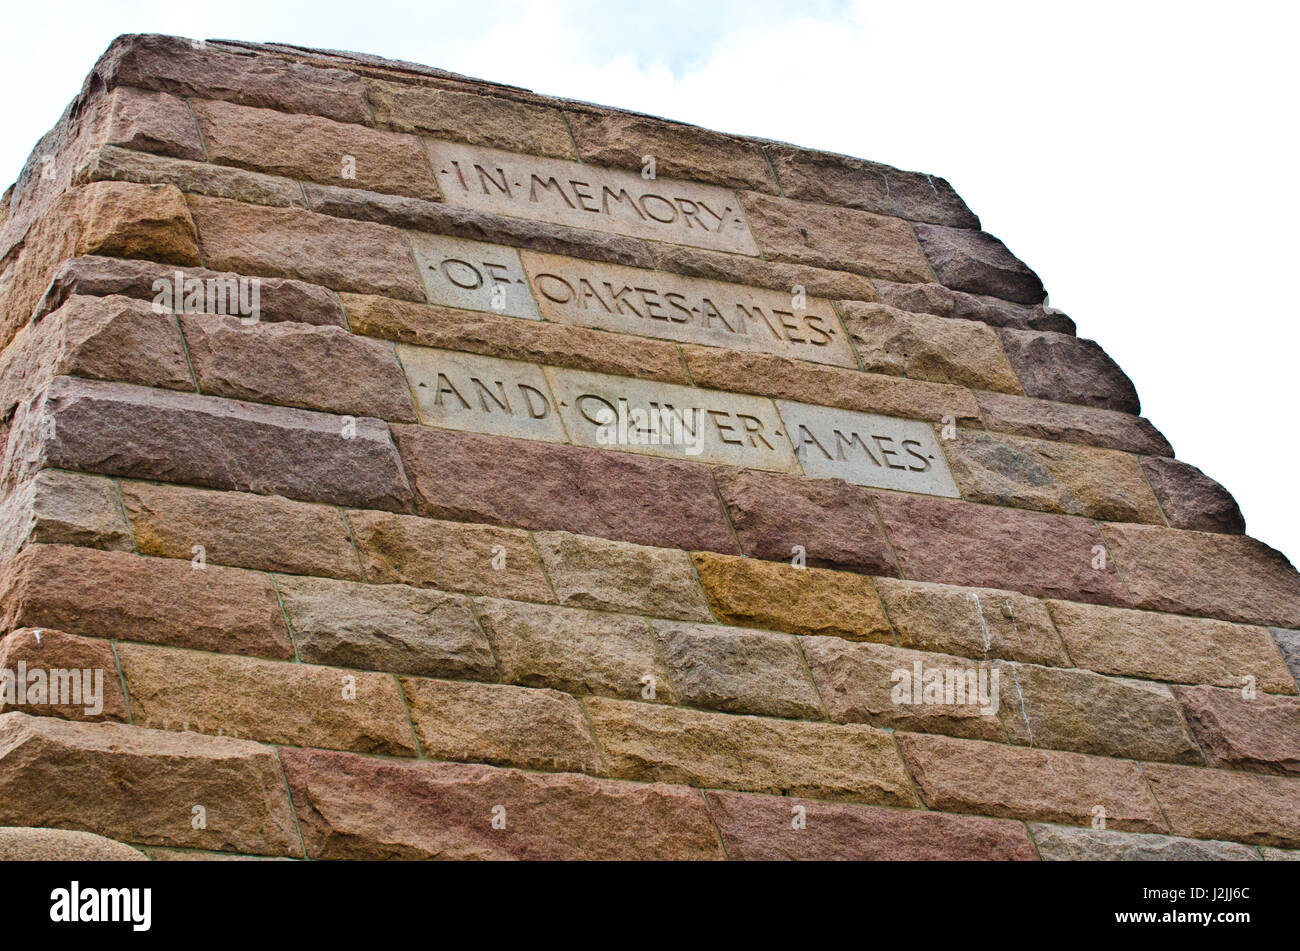 USA, Wyoming, Laramie, Ames, Monument dédié aux frères qui ont financé la Union Pacific Railroad situé au point le plus haut Banque D'Images